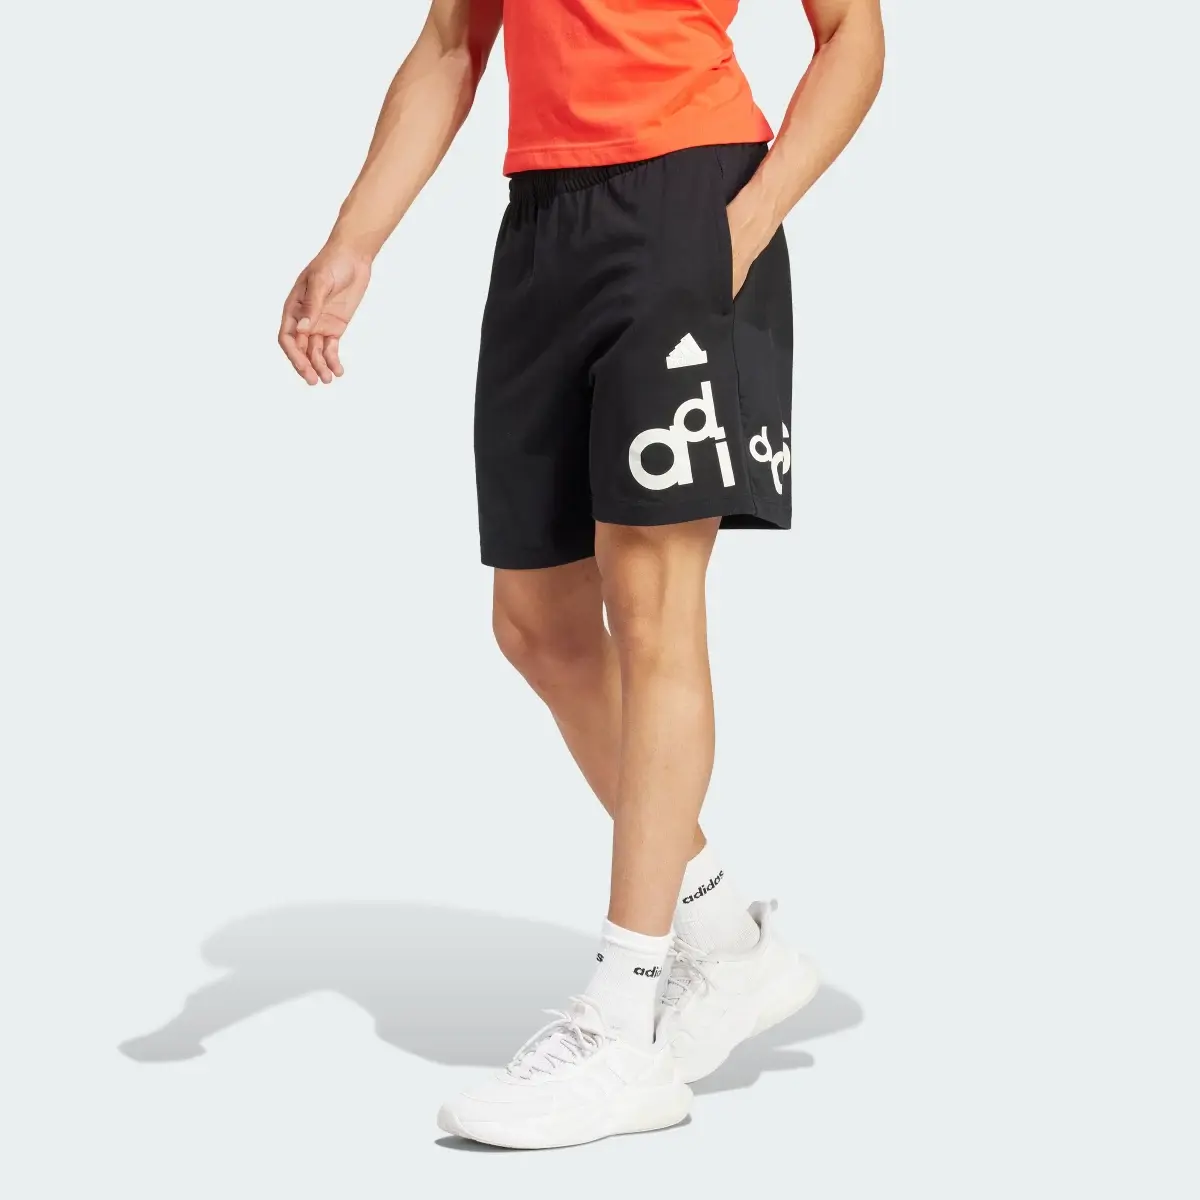 Adidas Graphic Print Shorts. 1